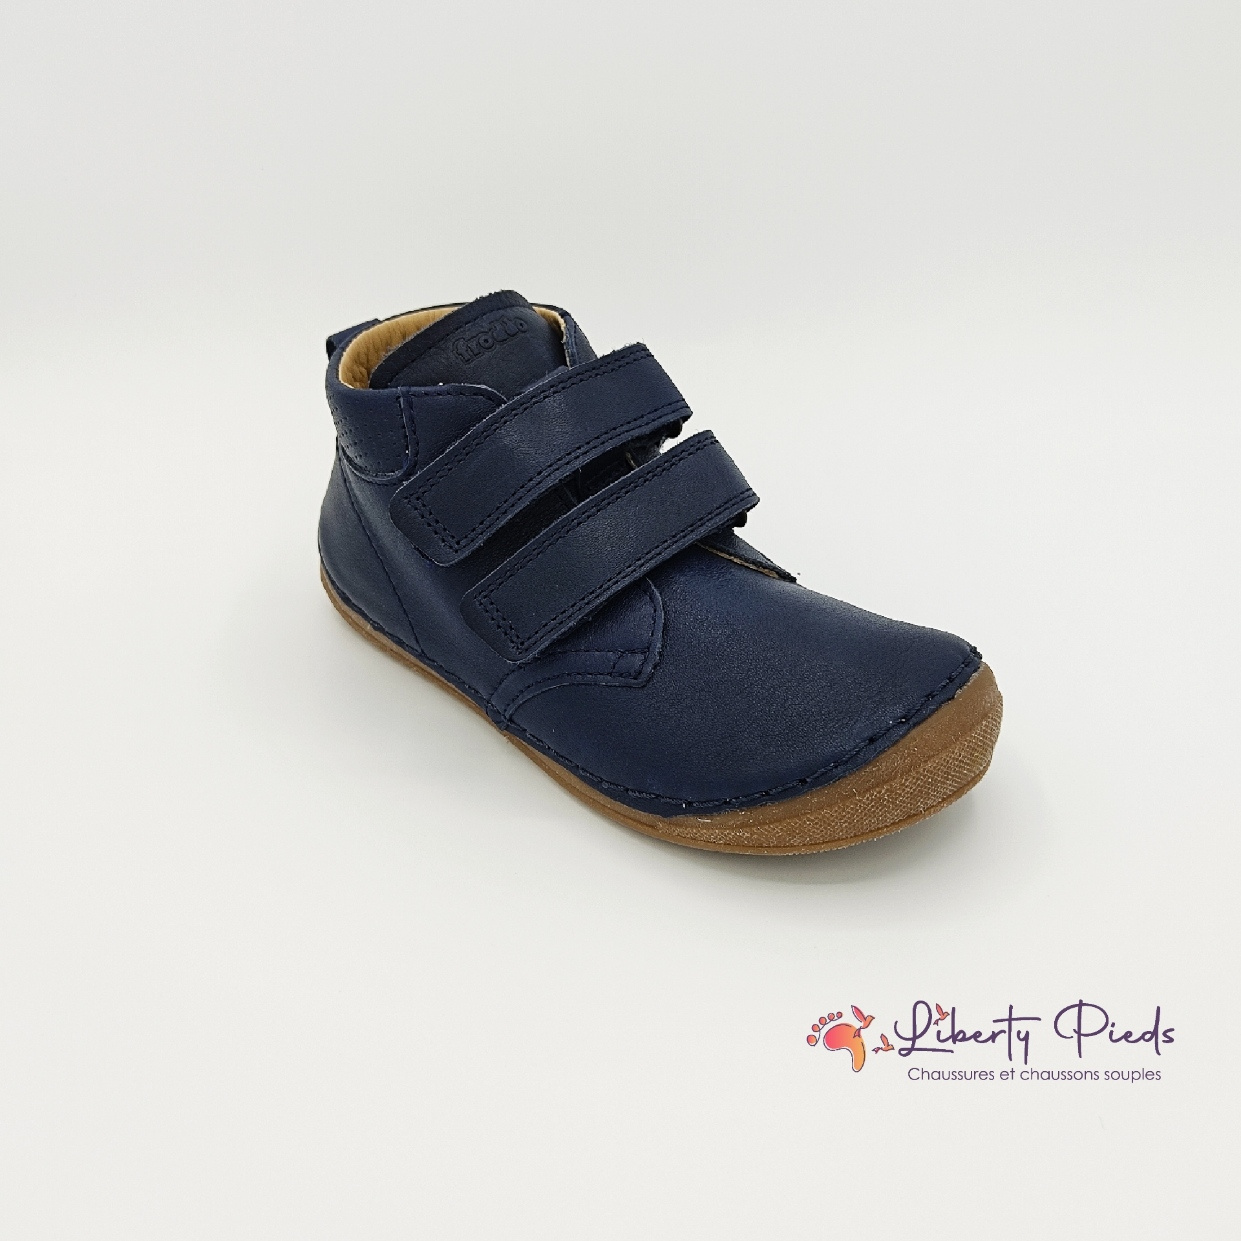 chaussures en cuir froddo paix velcro dark blue sur la boutique liberty pieds (7)